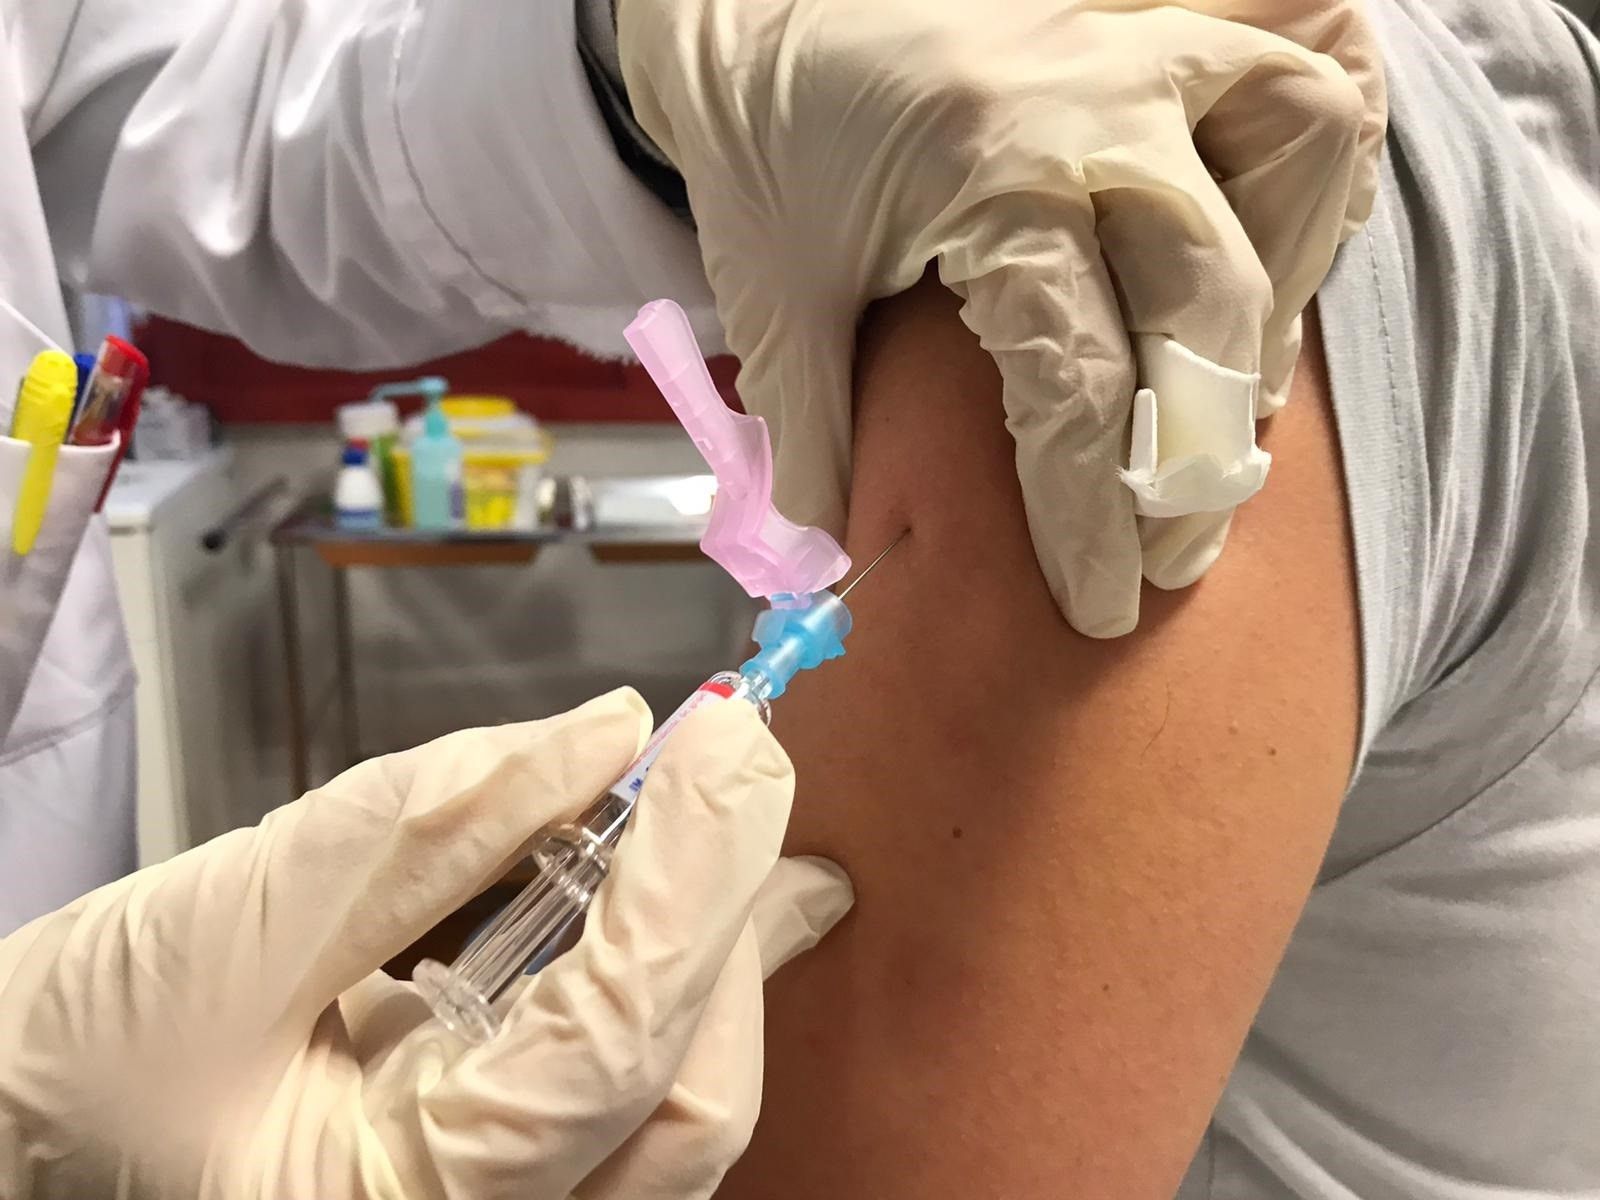 Los menores de 60 años vacunados con AstraZeneca recibirán la segunda dosis de Pfizer